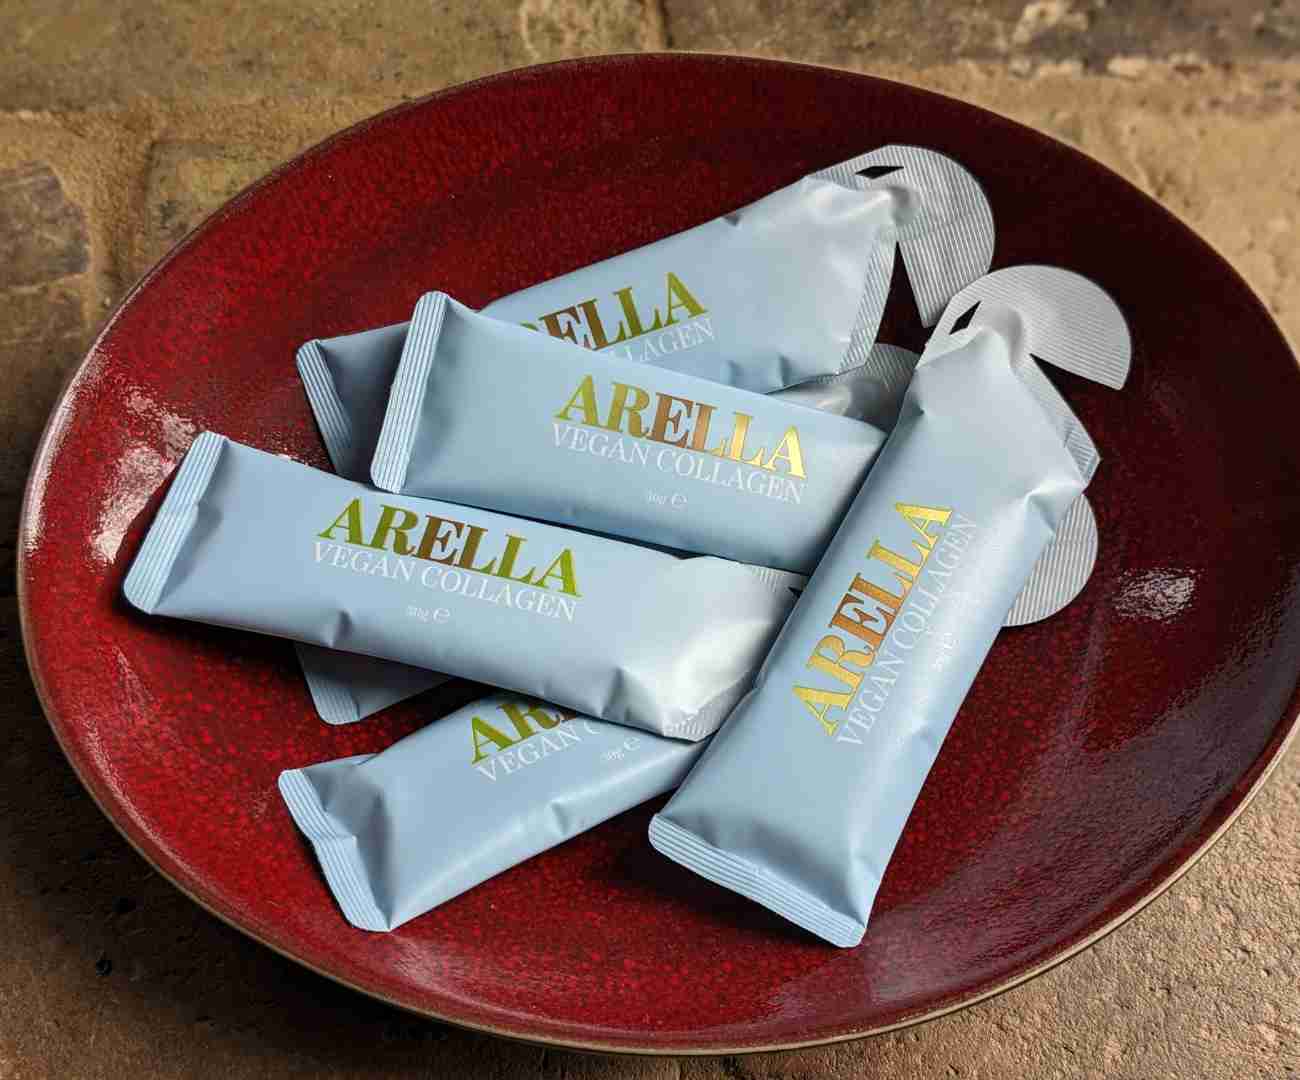 Arella review – vegan liquid collagen with taste